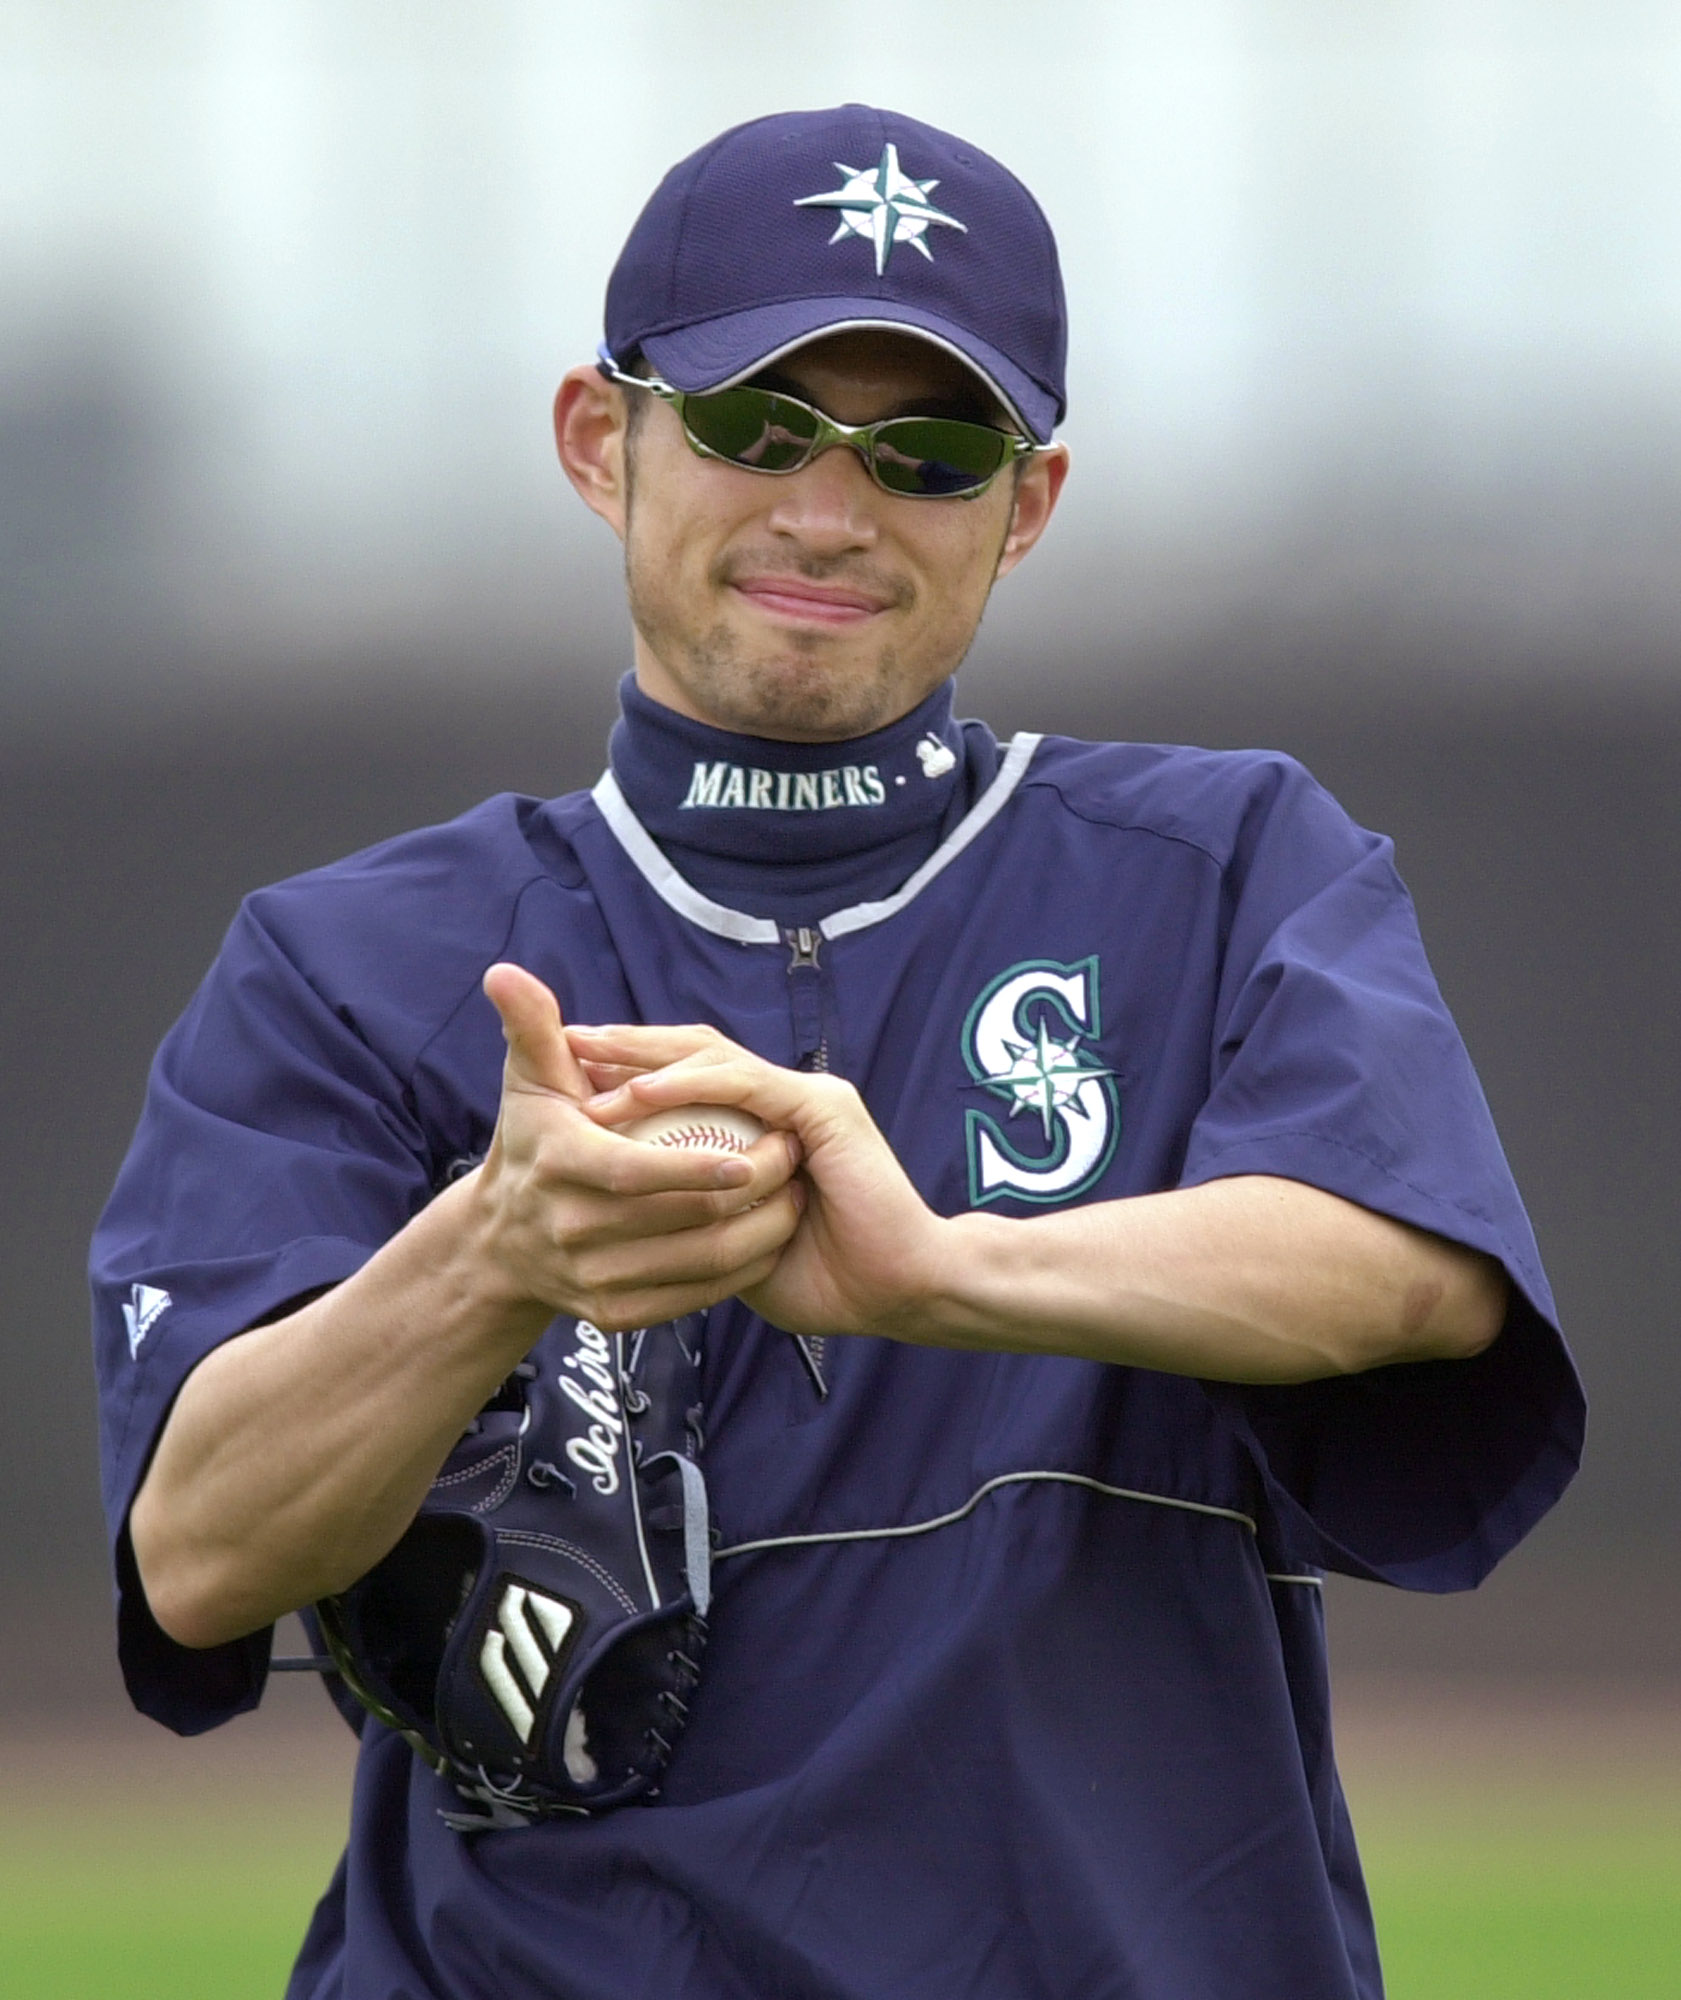 Ichiro Suzuki retirement: His long goodbye in Tokyo, Japan - The Washington  Post